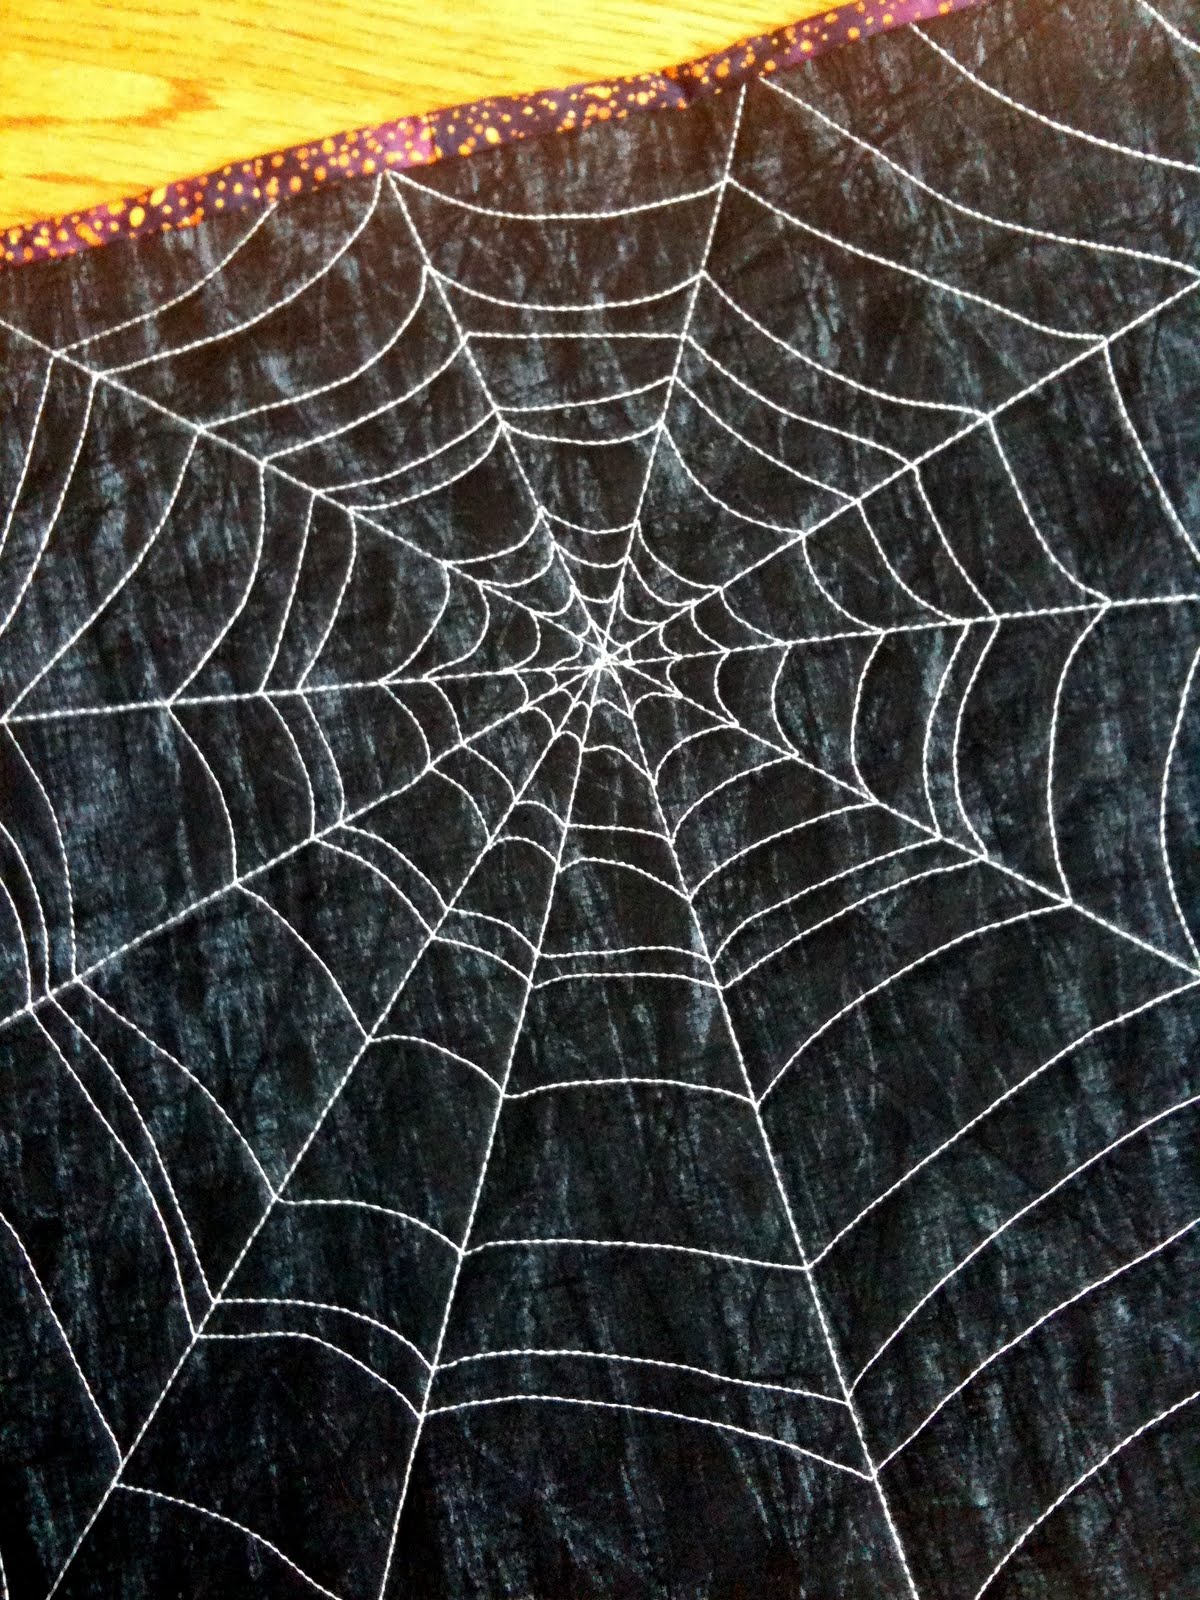 A Few Scraps: Spiderwebs